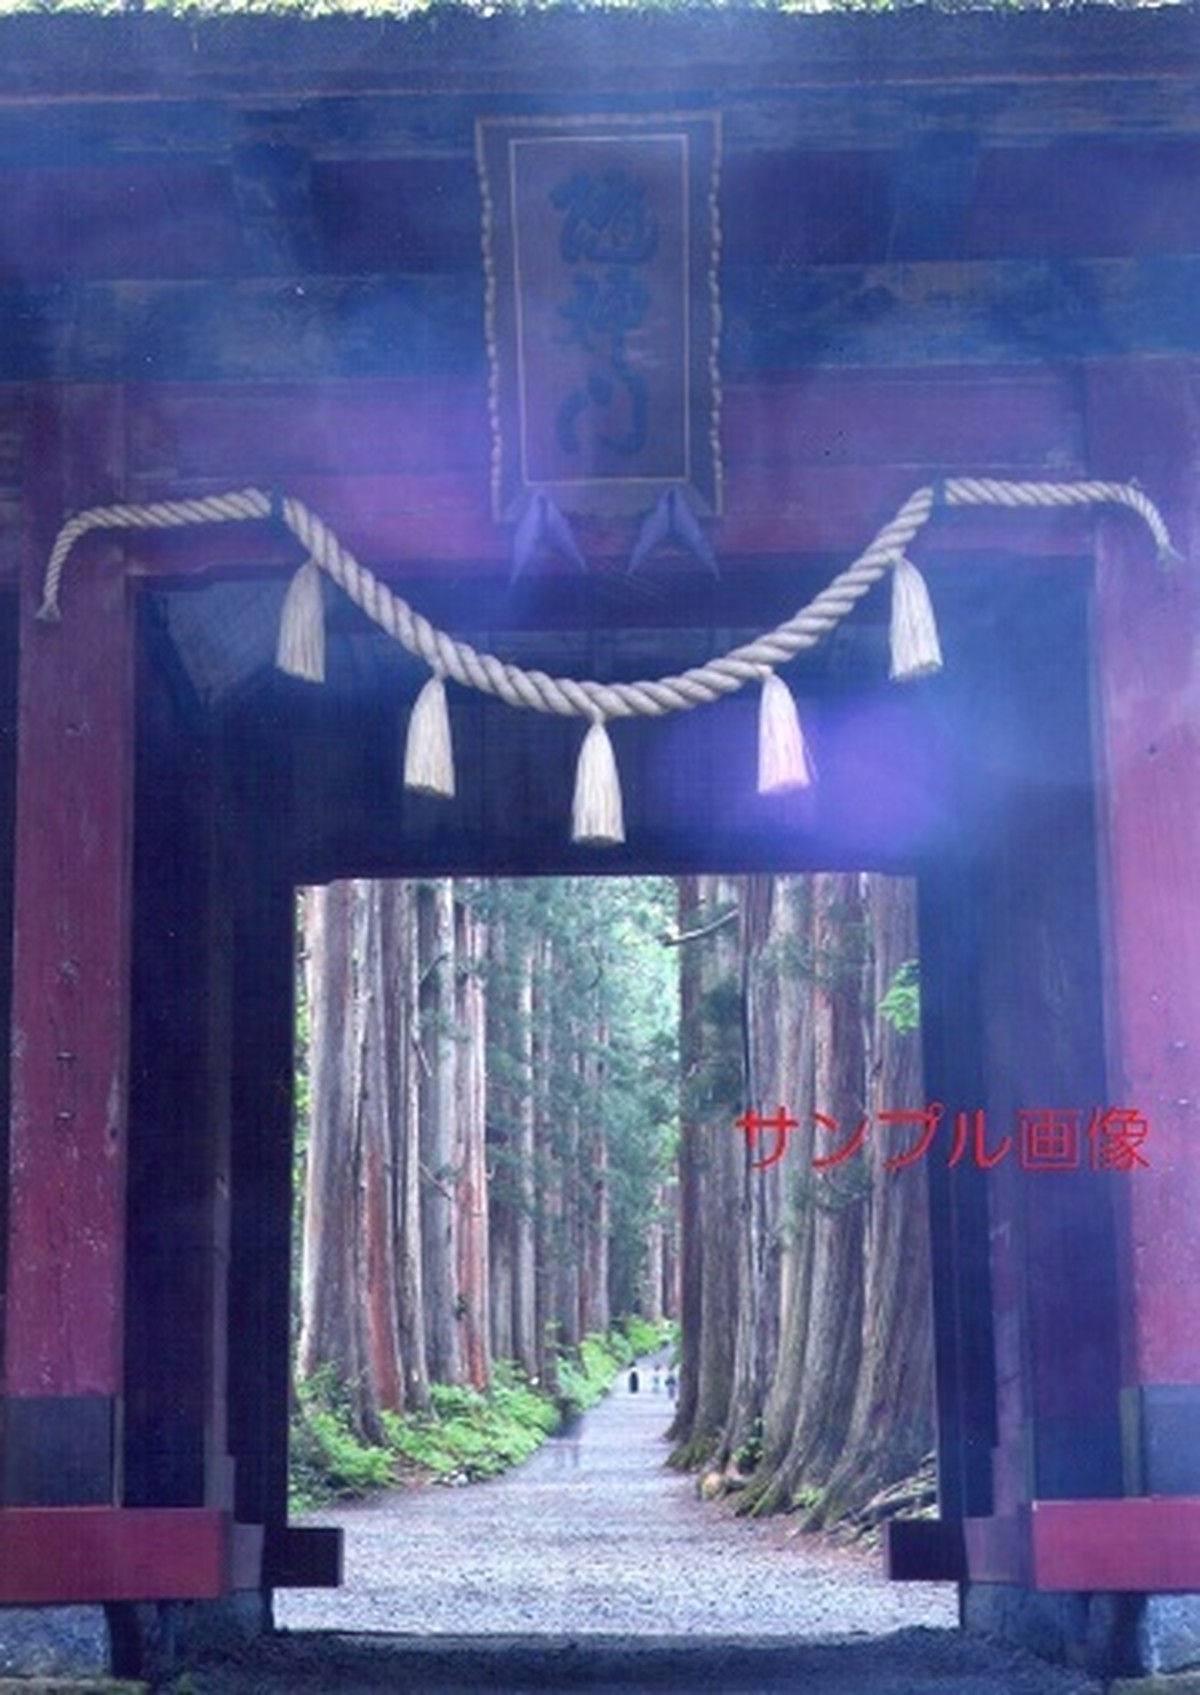 聖域の風景 縁起の良い奇跡の開運写真を戸隠神社で撮影 開運グッズ販売 はじめの一歩